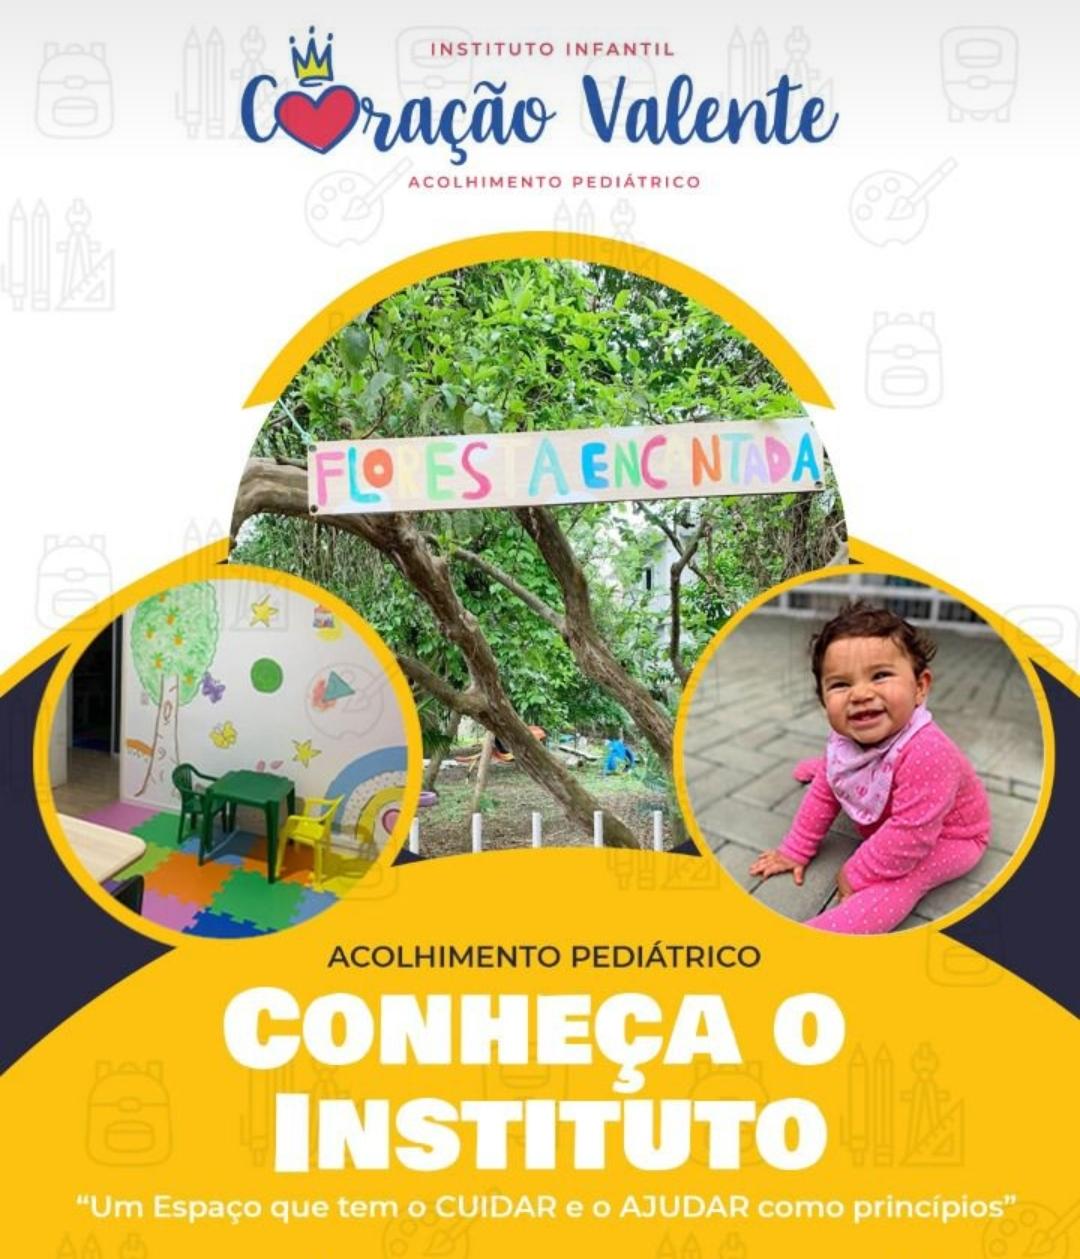 Instituto Infantil Coração Valente